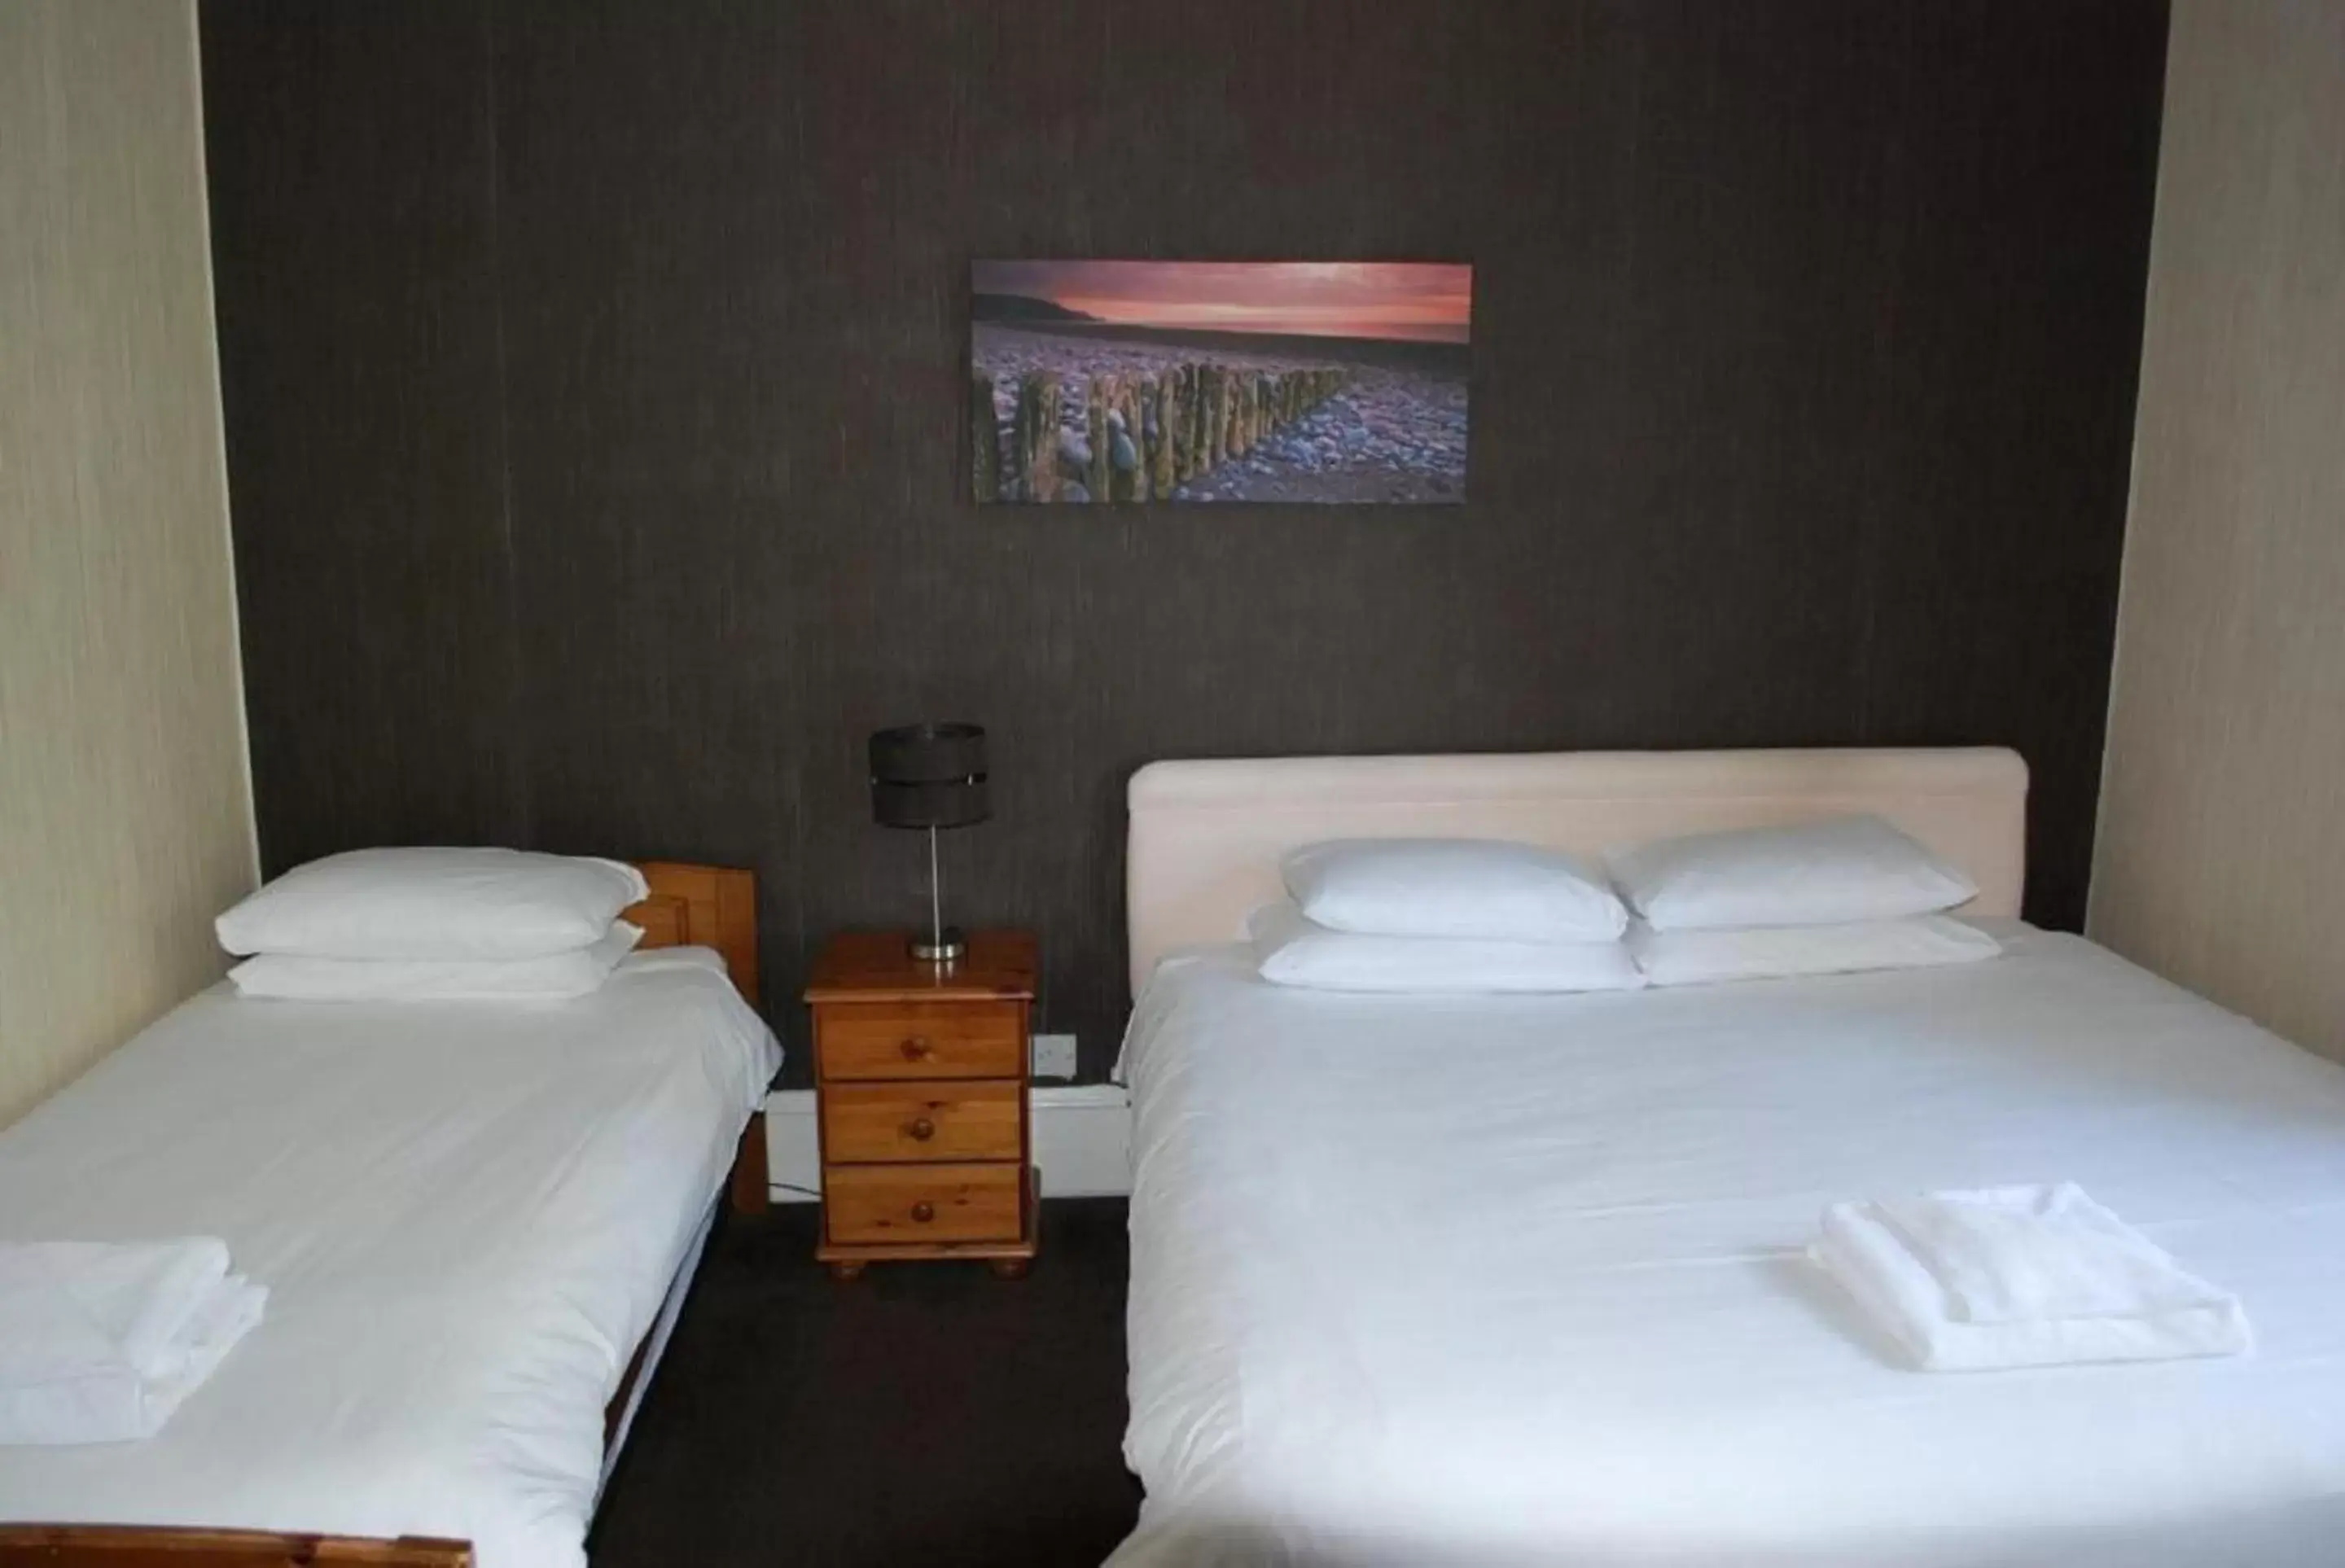 Bedroom, Bed in Great Western Hotel Aberdeen